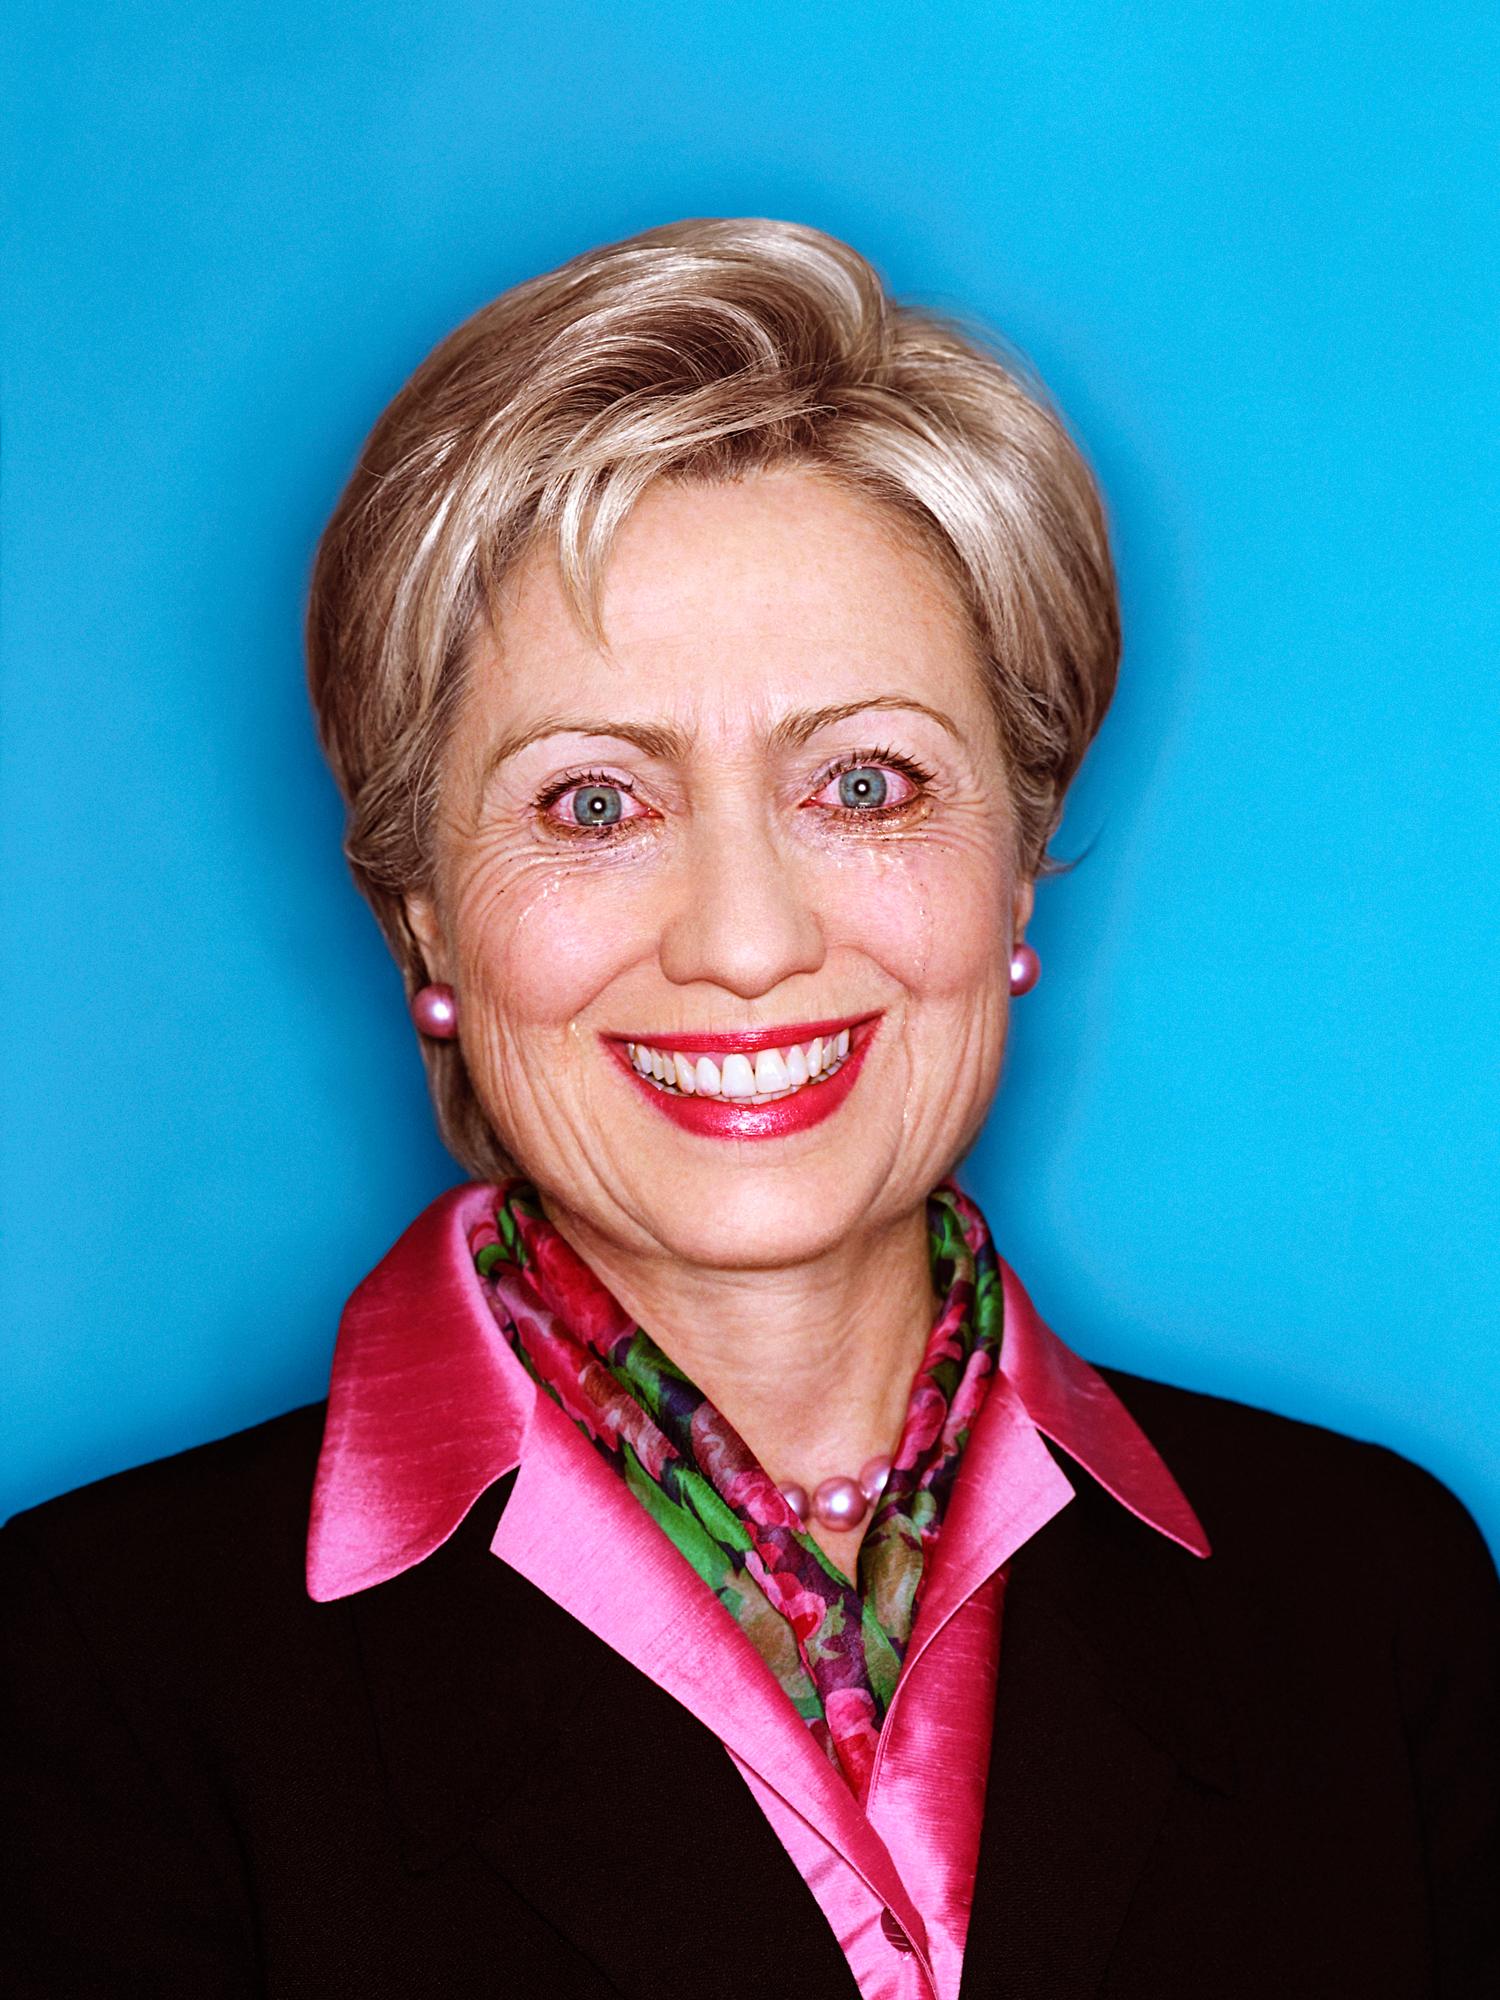 Color Photograph David LaChapelle - Hillary Clinton : Paradoxe des politiques